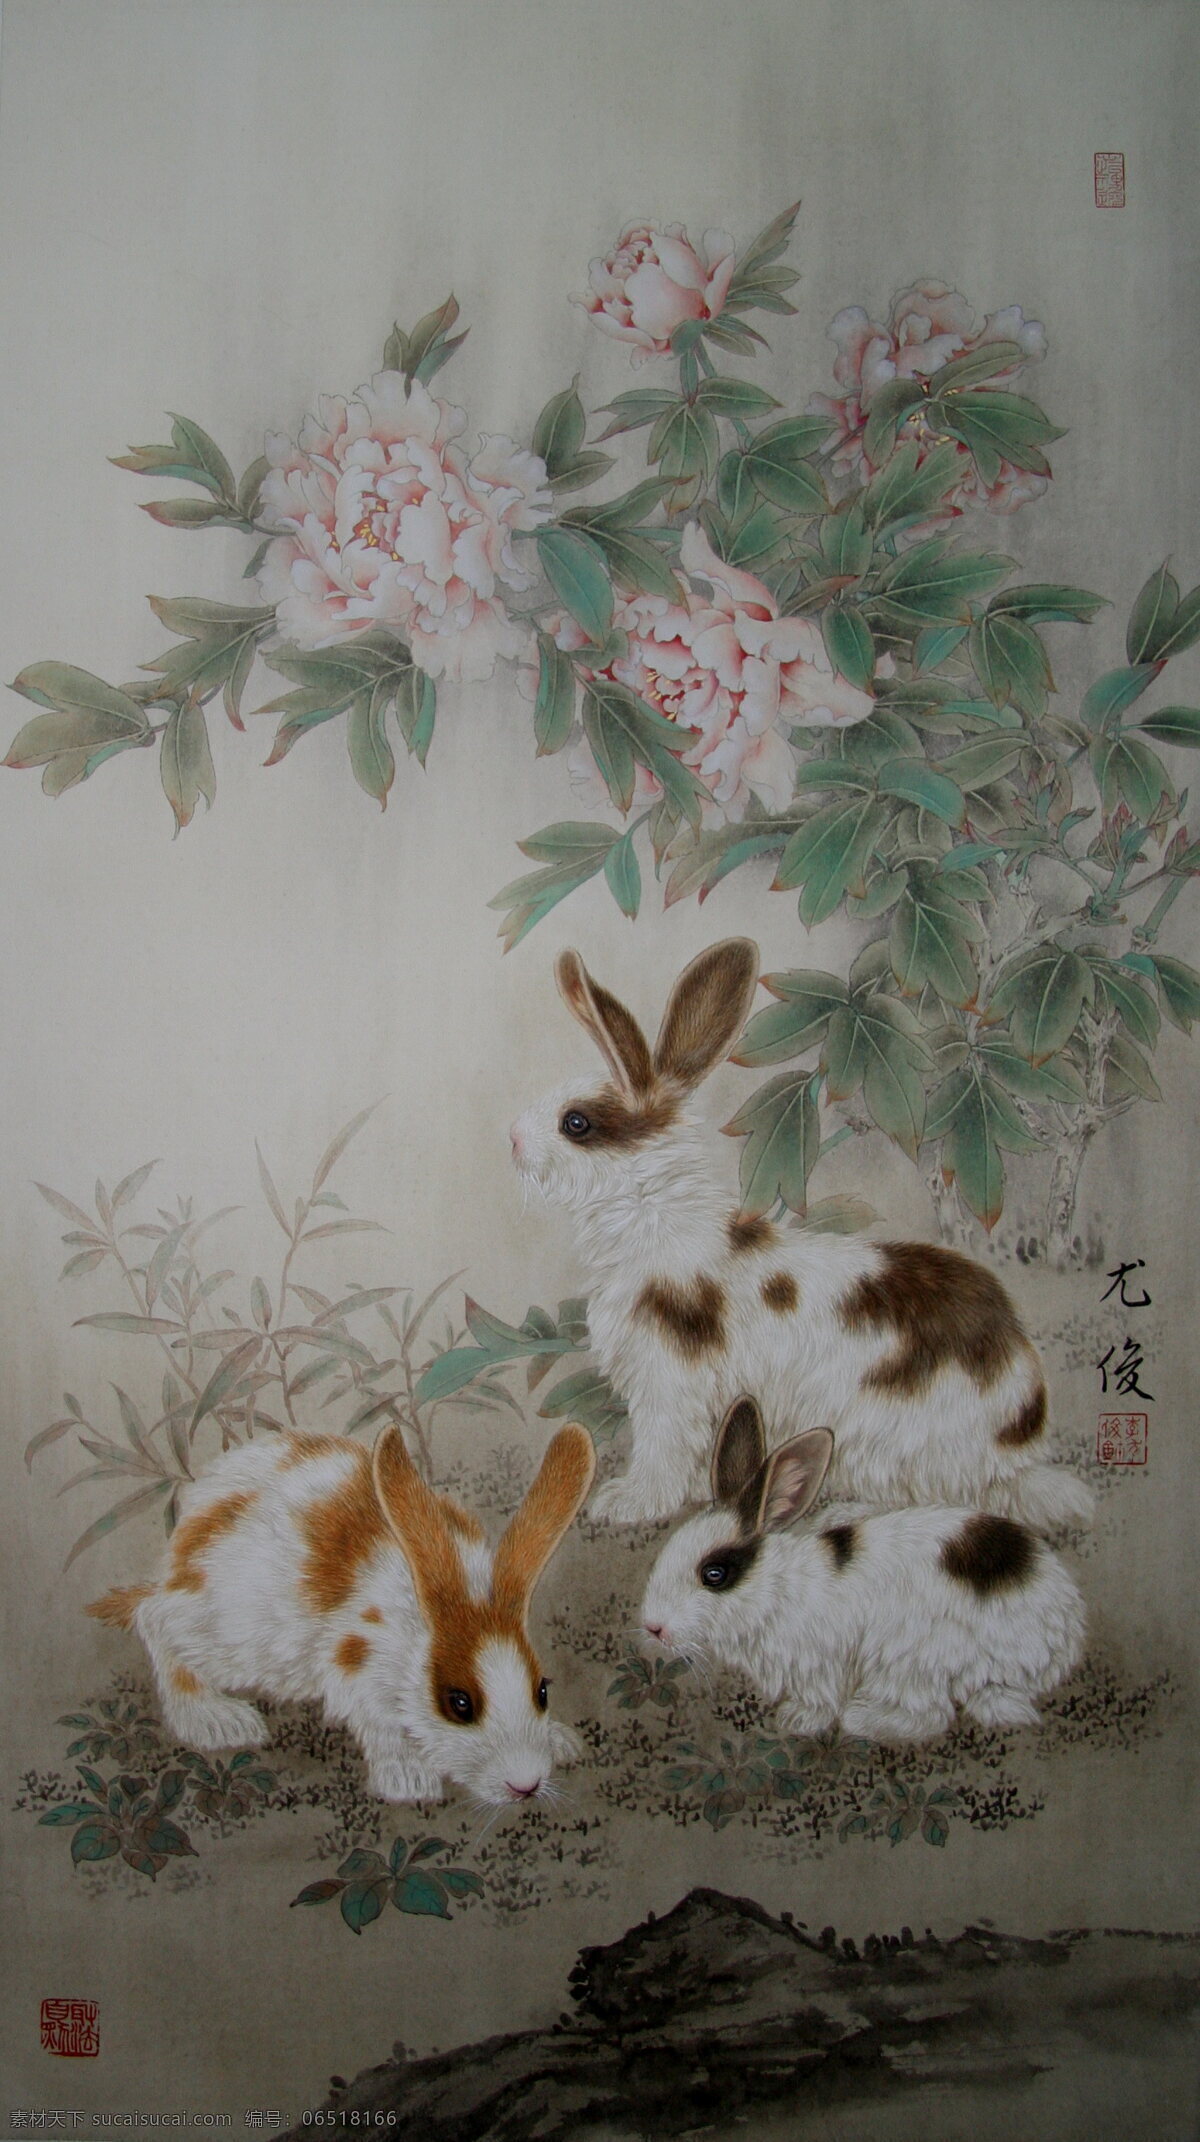 富贵吉祥兔 兔子 尤俊 工笔画 挂历 李 尤 俊 绘画书法 文化艺术